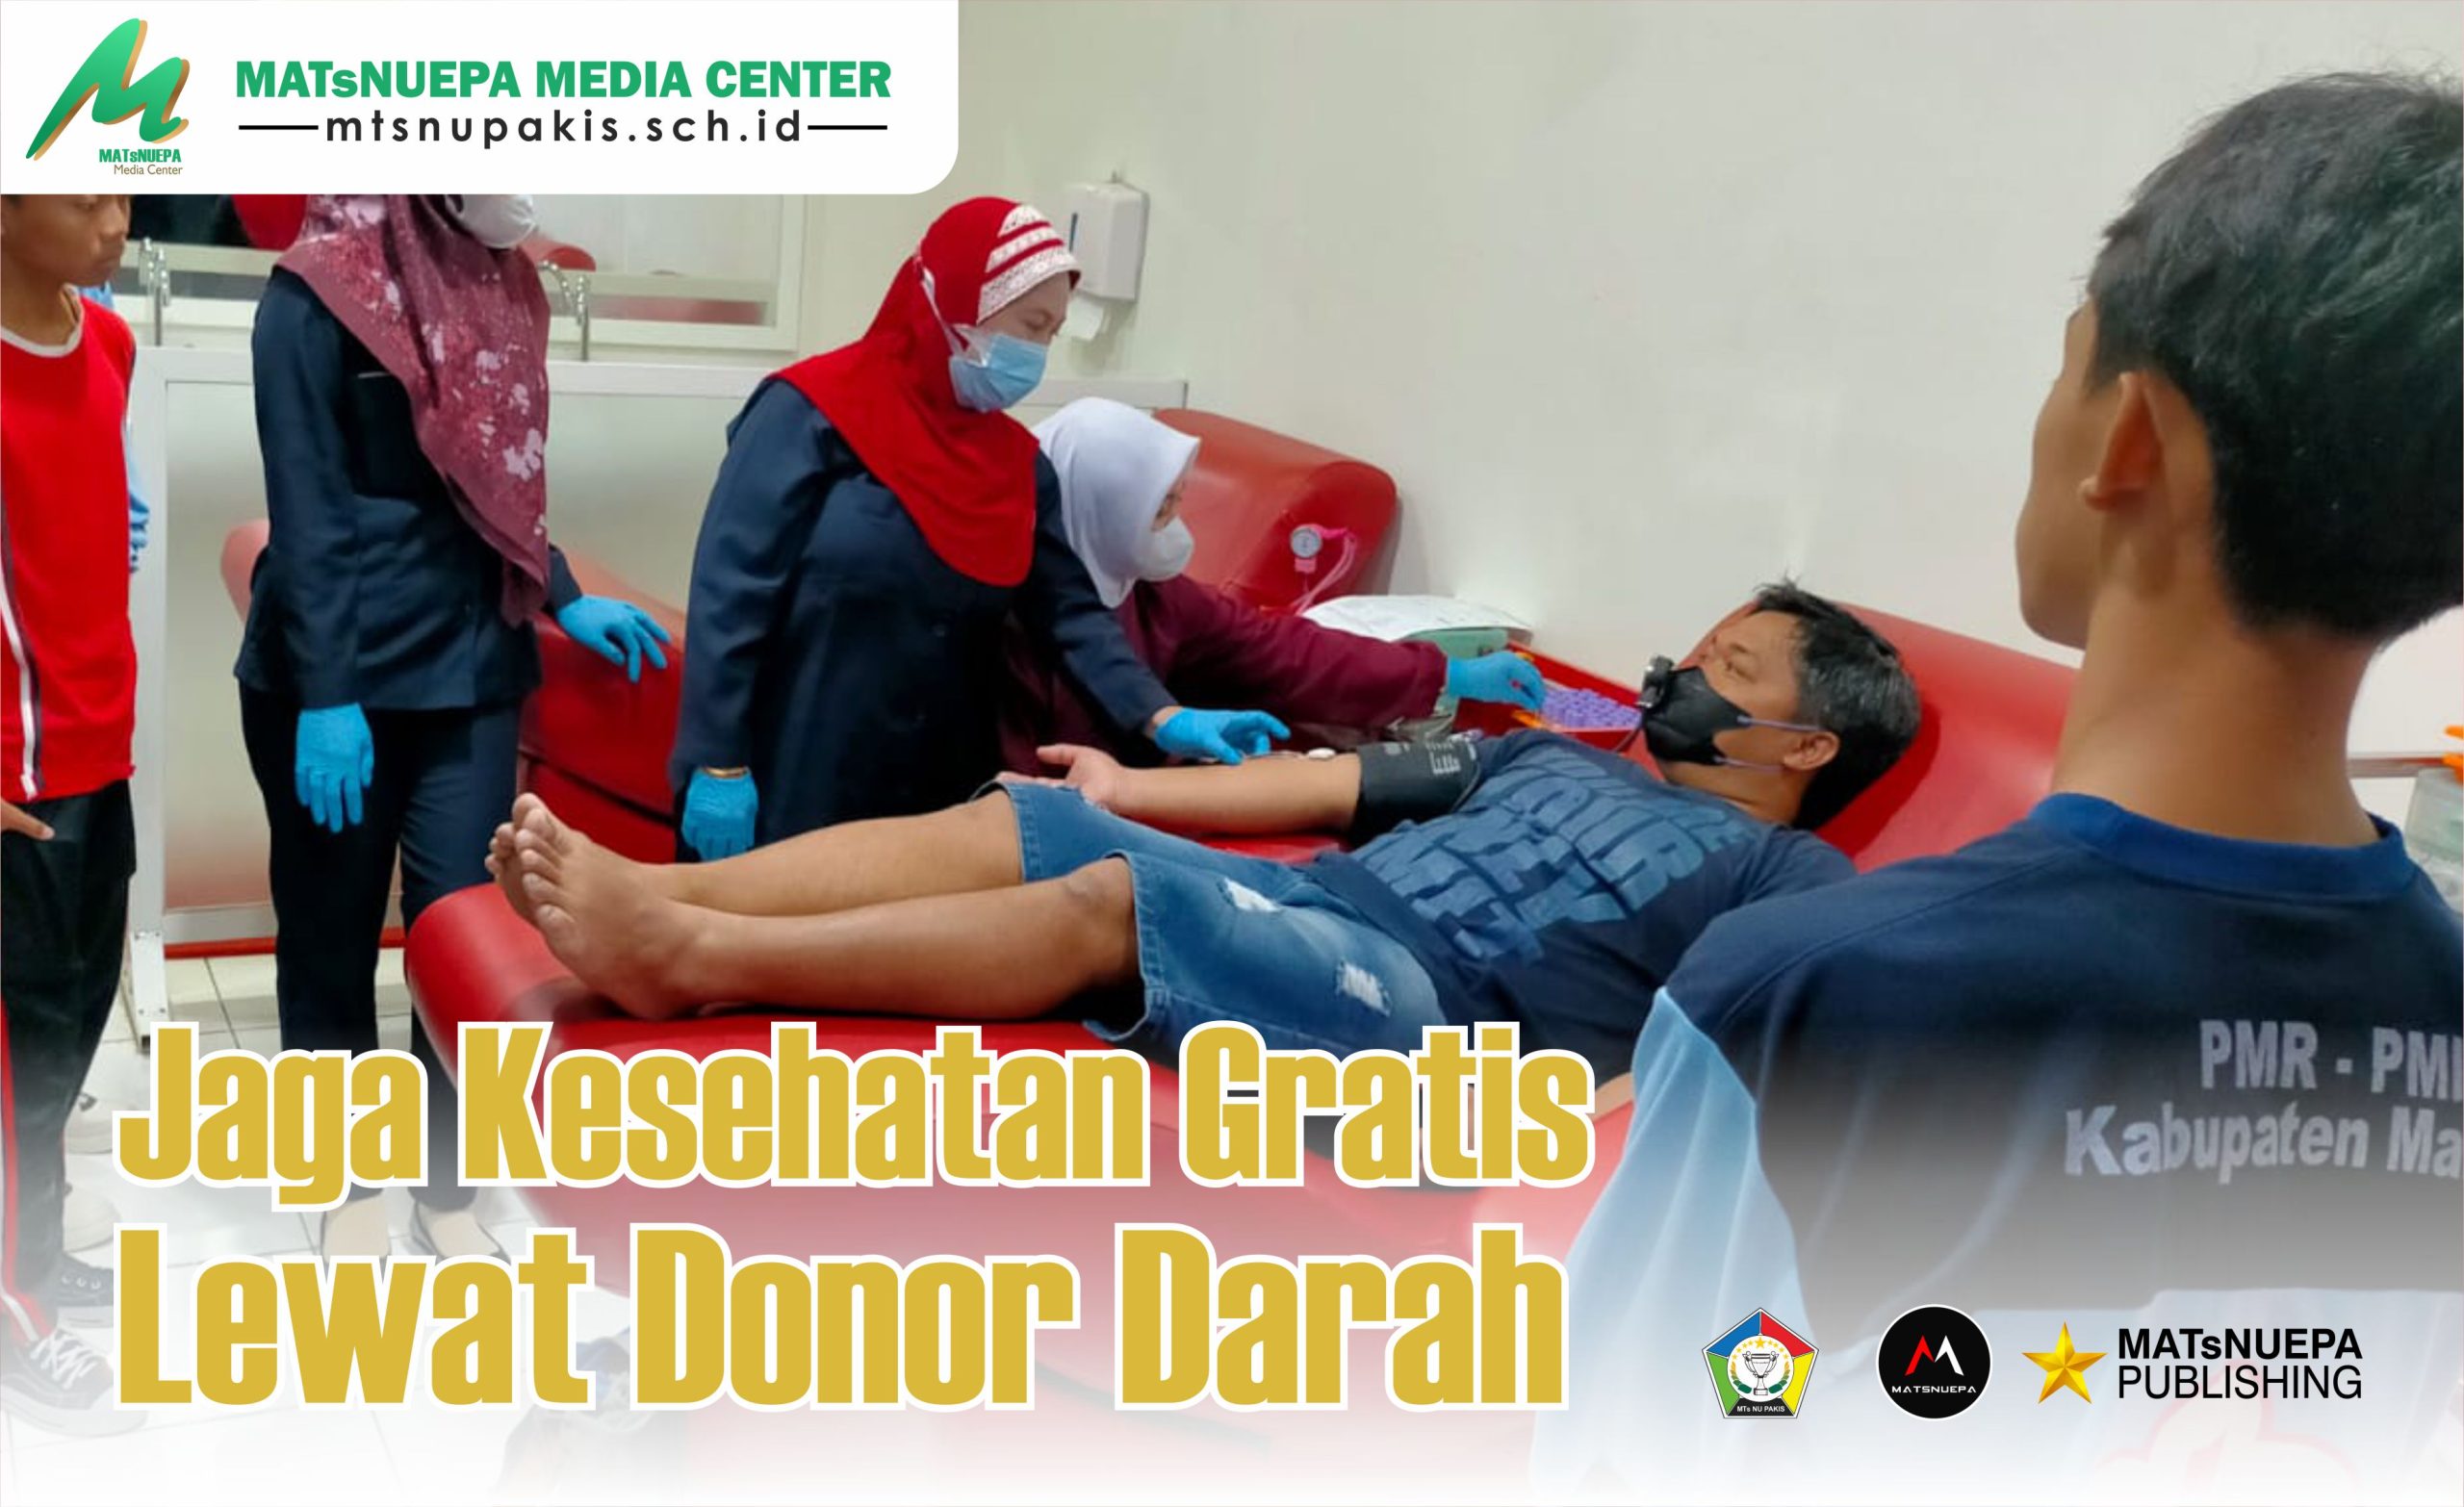 Jaga Kesehatan Gratis Lewat Donor Darah